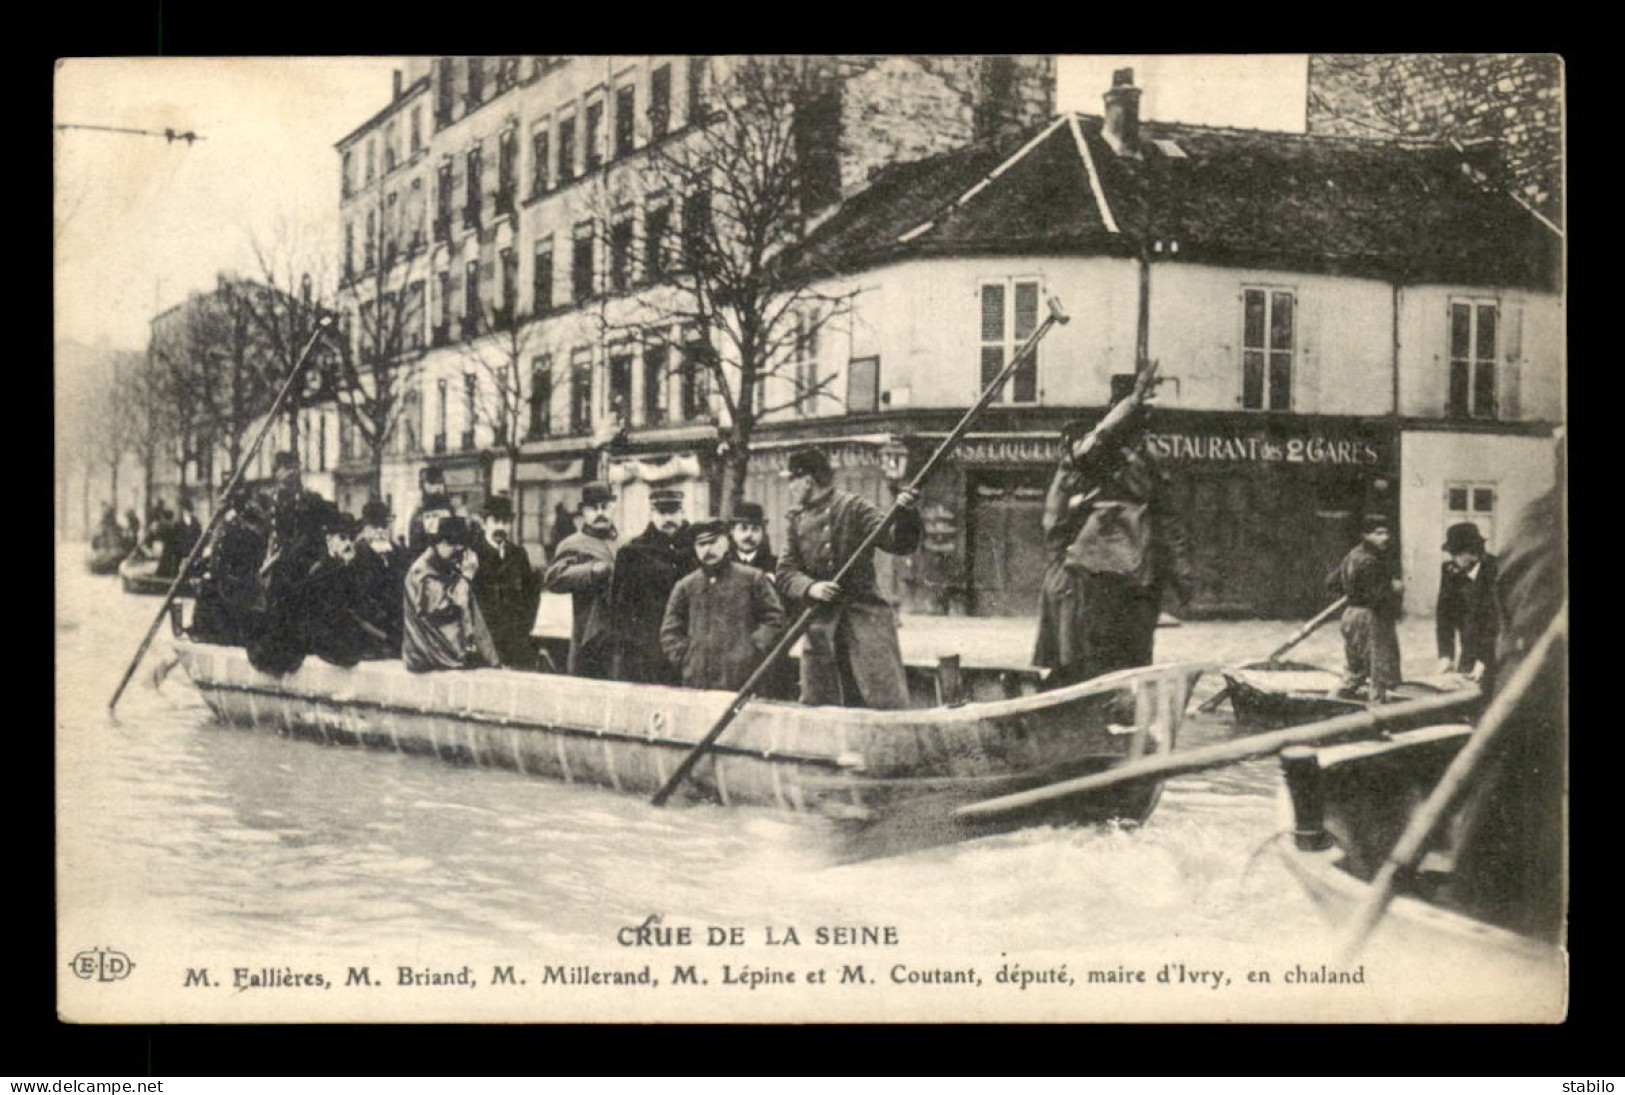 94 - IVRY - CRUE DE LA SEINE - M. BRIAND, M. MILLERAND, M. COUTANT,M. LEPINE ET M. FALLIERES EN CHALAND - Ivry Sur Seine